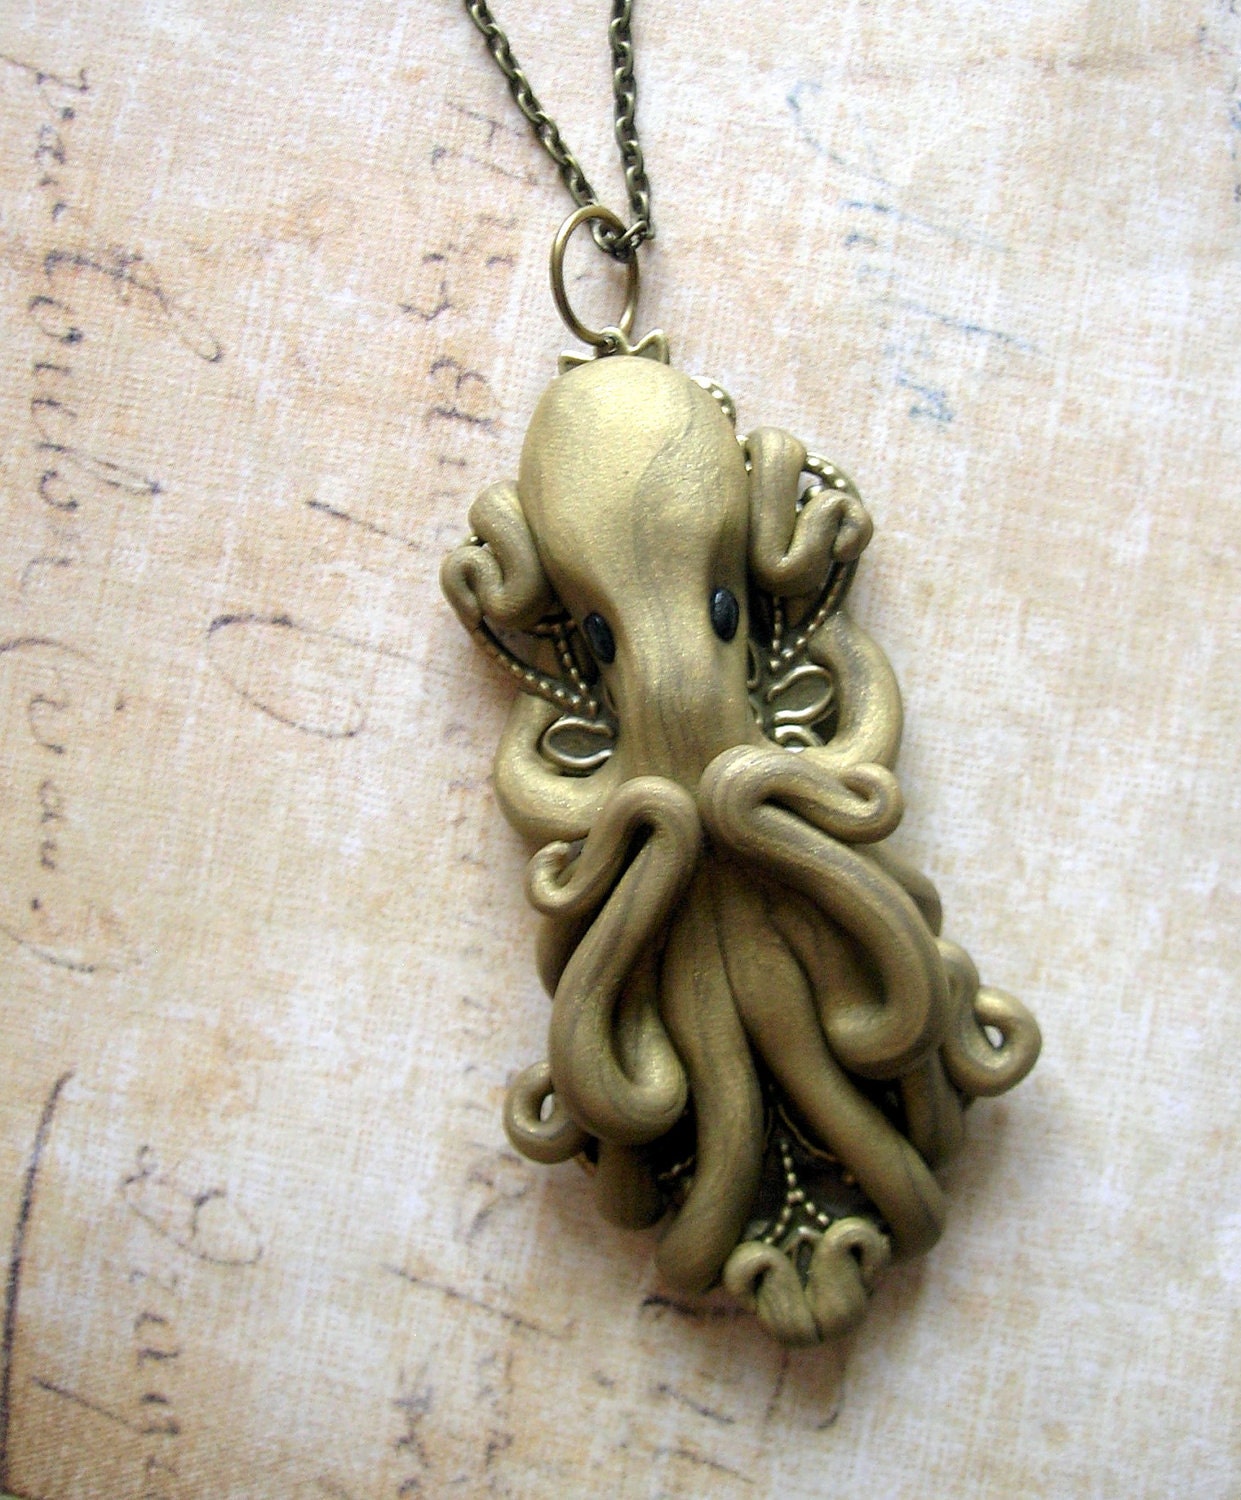 Ornate golden octopus necklace - rudeandreckless